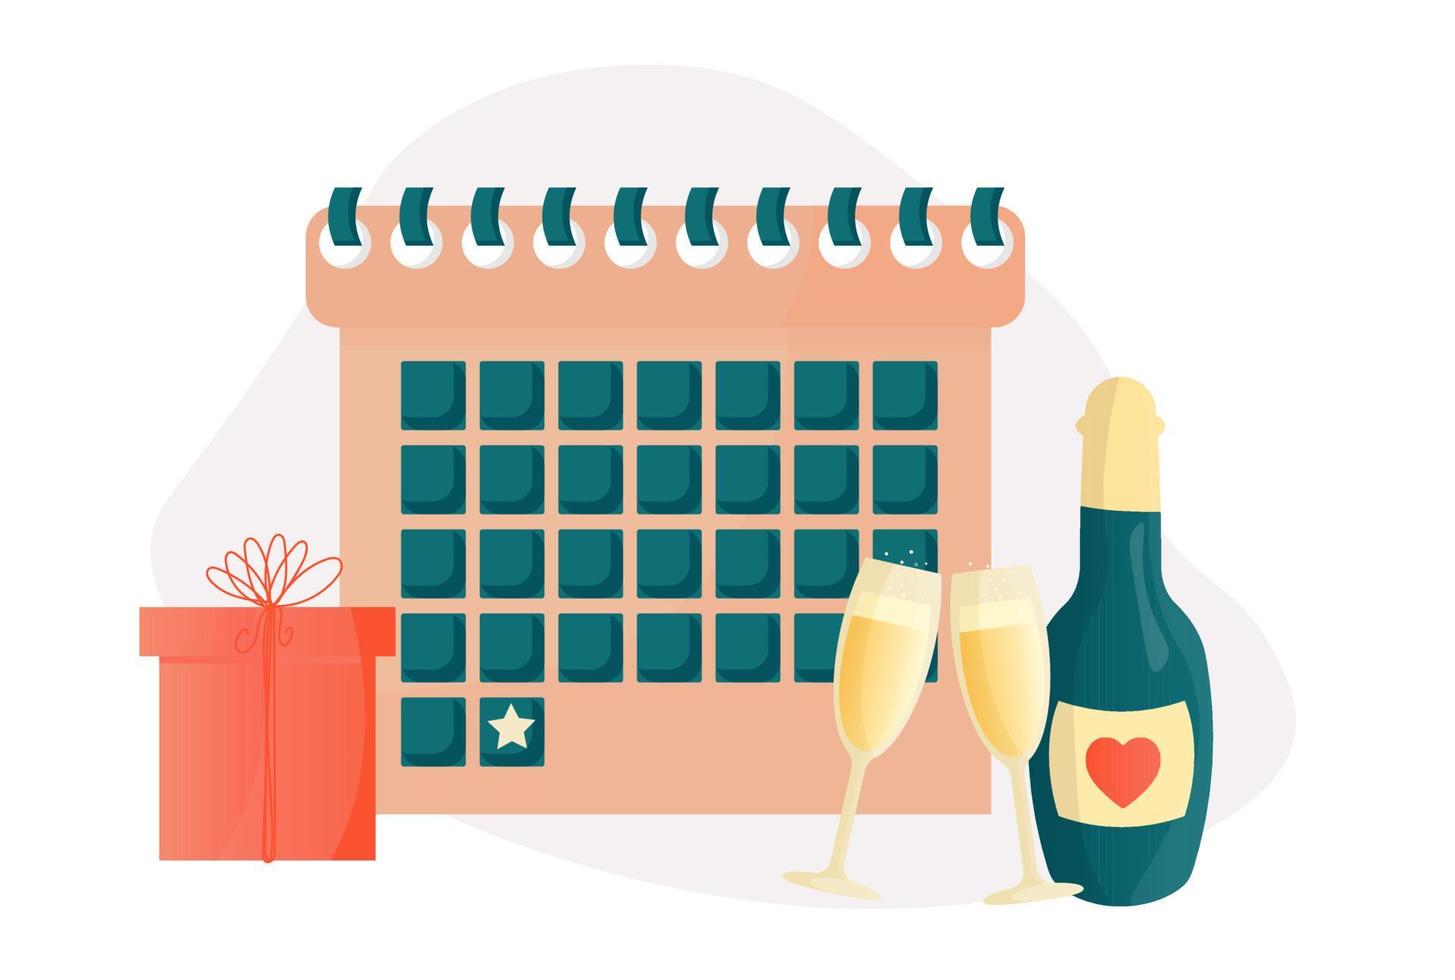 kalender mit einem wichtigen datum für feier, neujahr, geburtstag, ereignis. Vektor einfache niedliche Illustration. ein festliches Set Sektgläser, eine Flasche Champagner, eine Geschenkbox.